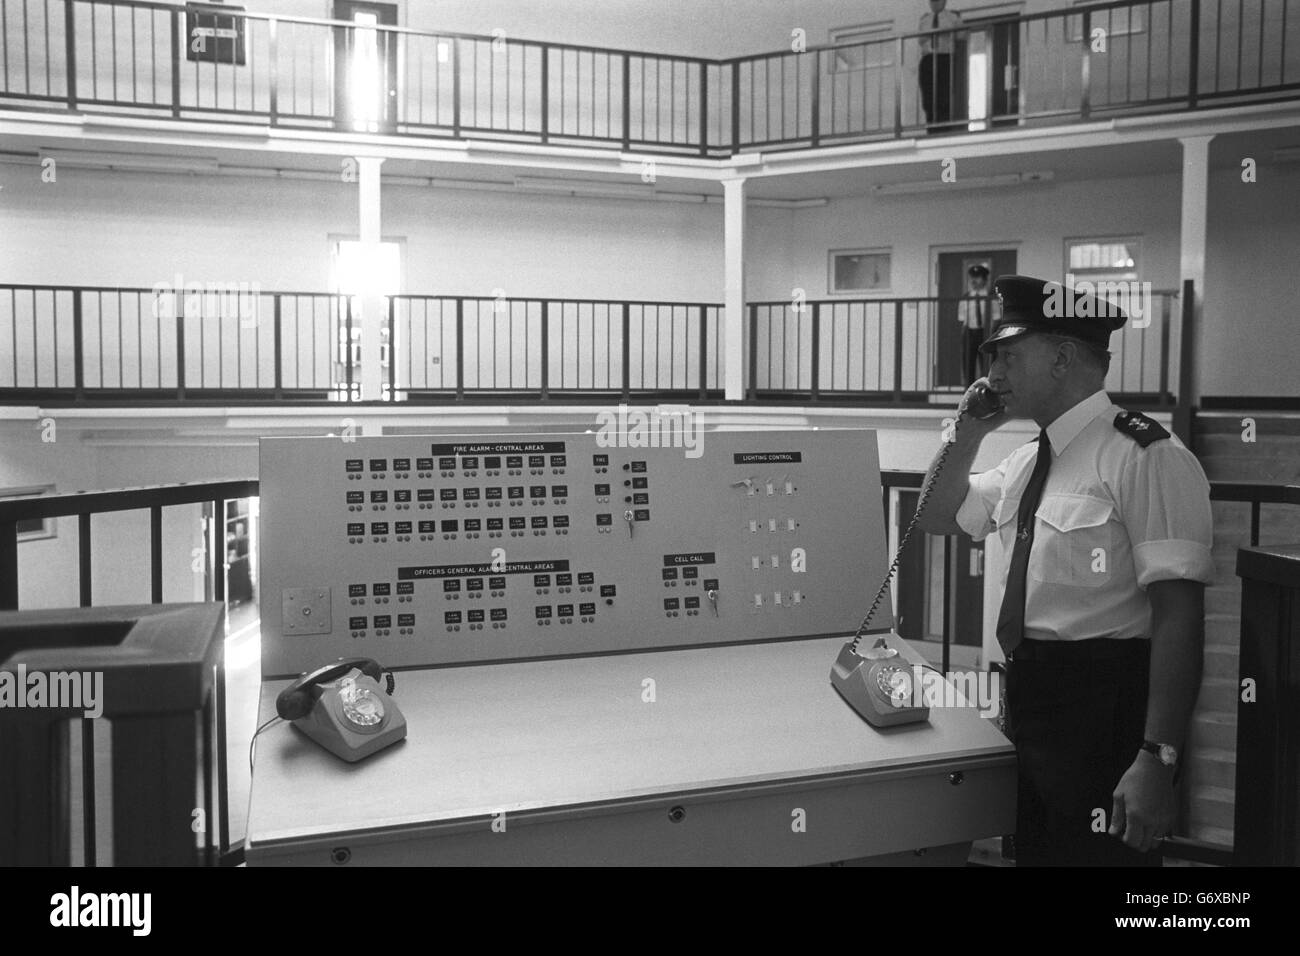 Innenansicht des Chelmsford Gefängnisses, das nach einem schweren Brand im März 1978 geschlossen wurde. Es soll wieder eröffnet werden und seine Rolle wurde in die eines Zentrums für junge Gefangene geändert, das Einrichtungen für fast 250 junge Gefangene bietet. Stockfoto